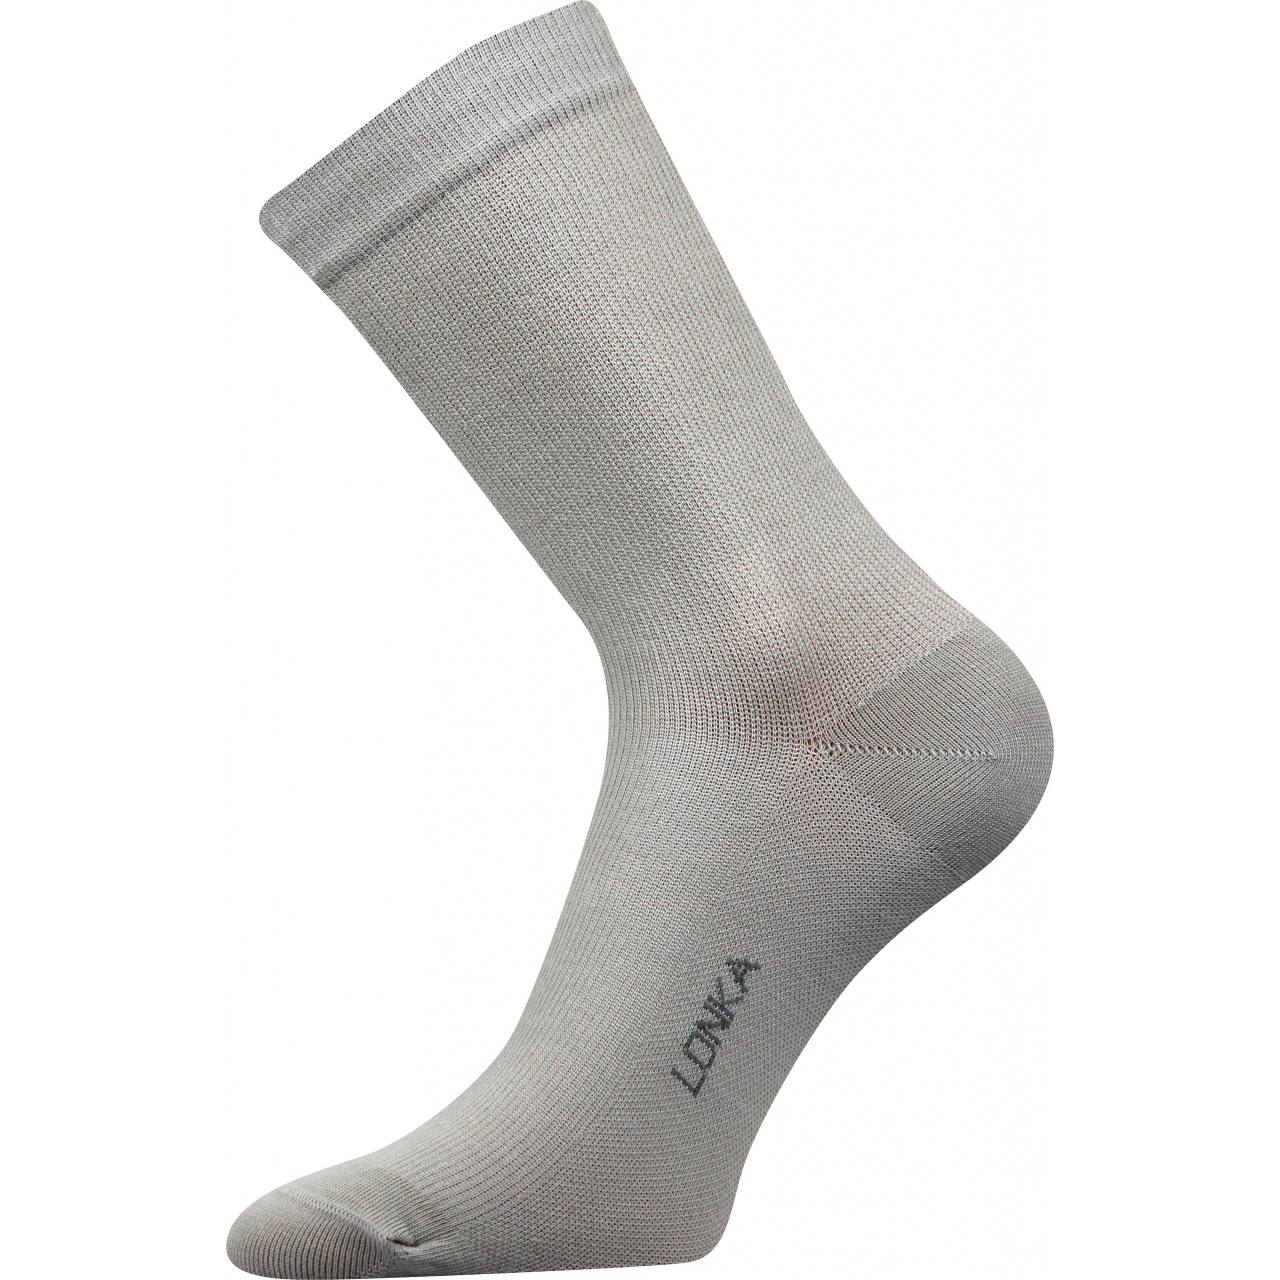 Ponožky kompresní Lonka Kooper - světle šedé, 43-46